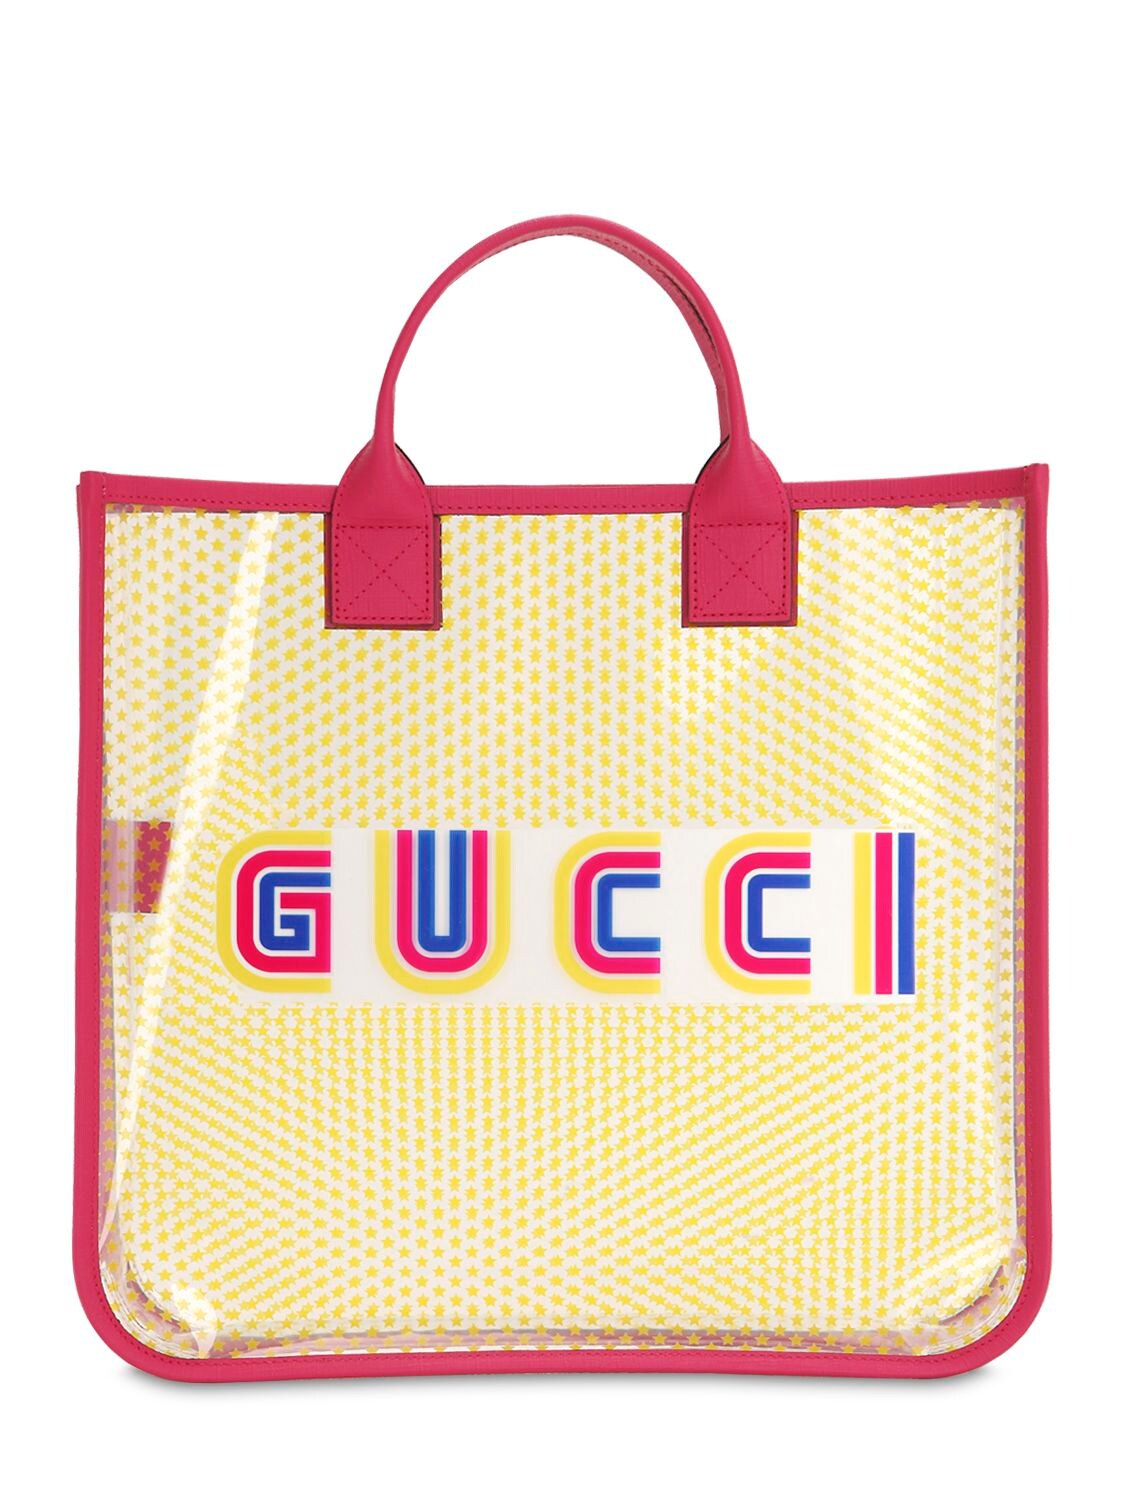 Gucci Kids' Pvc Tote Bag In Multicolor